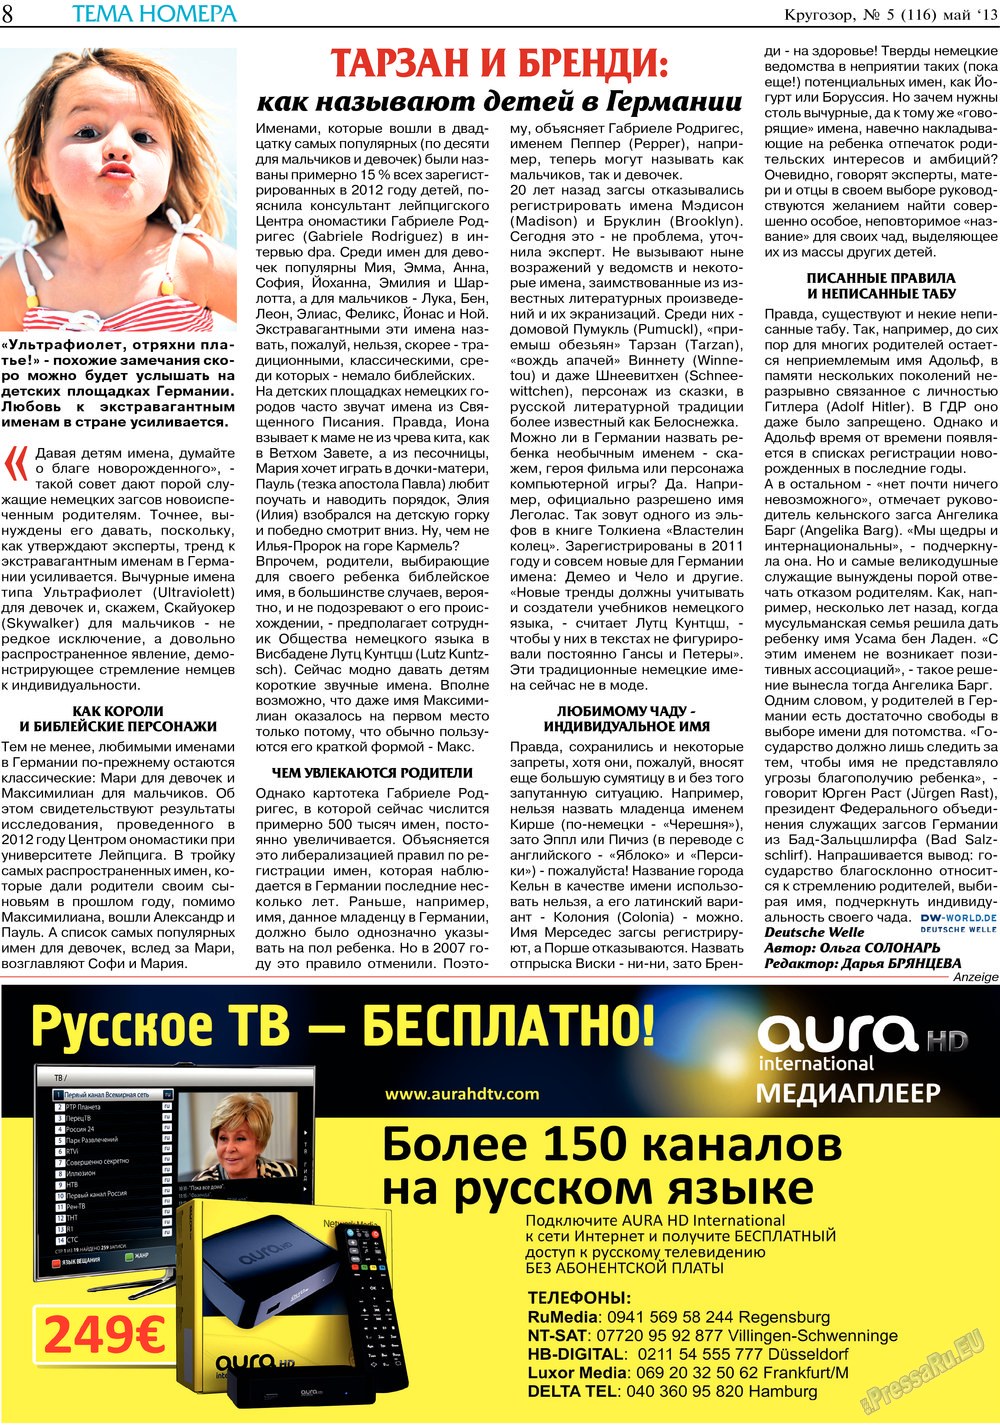 Кругозор, газета. 2013 №5 стр.8